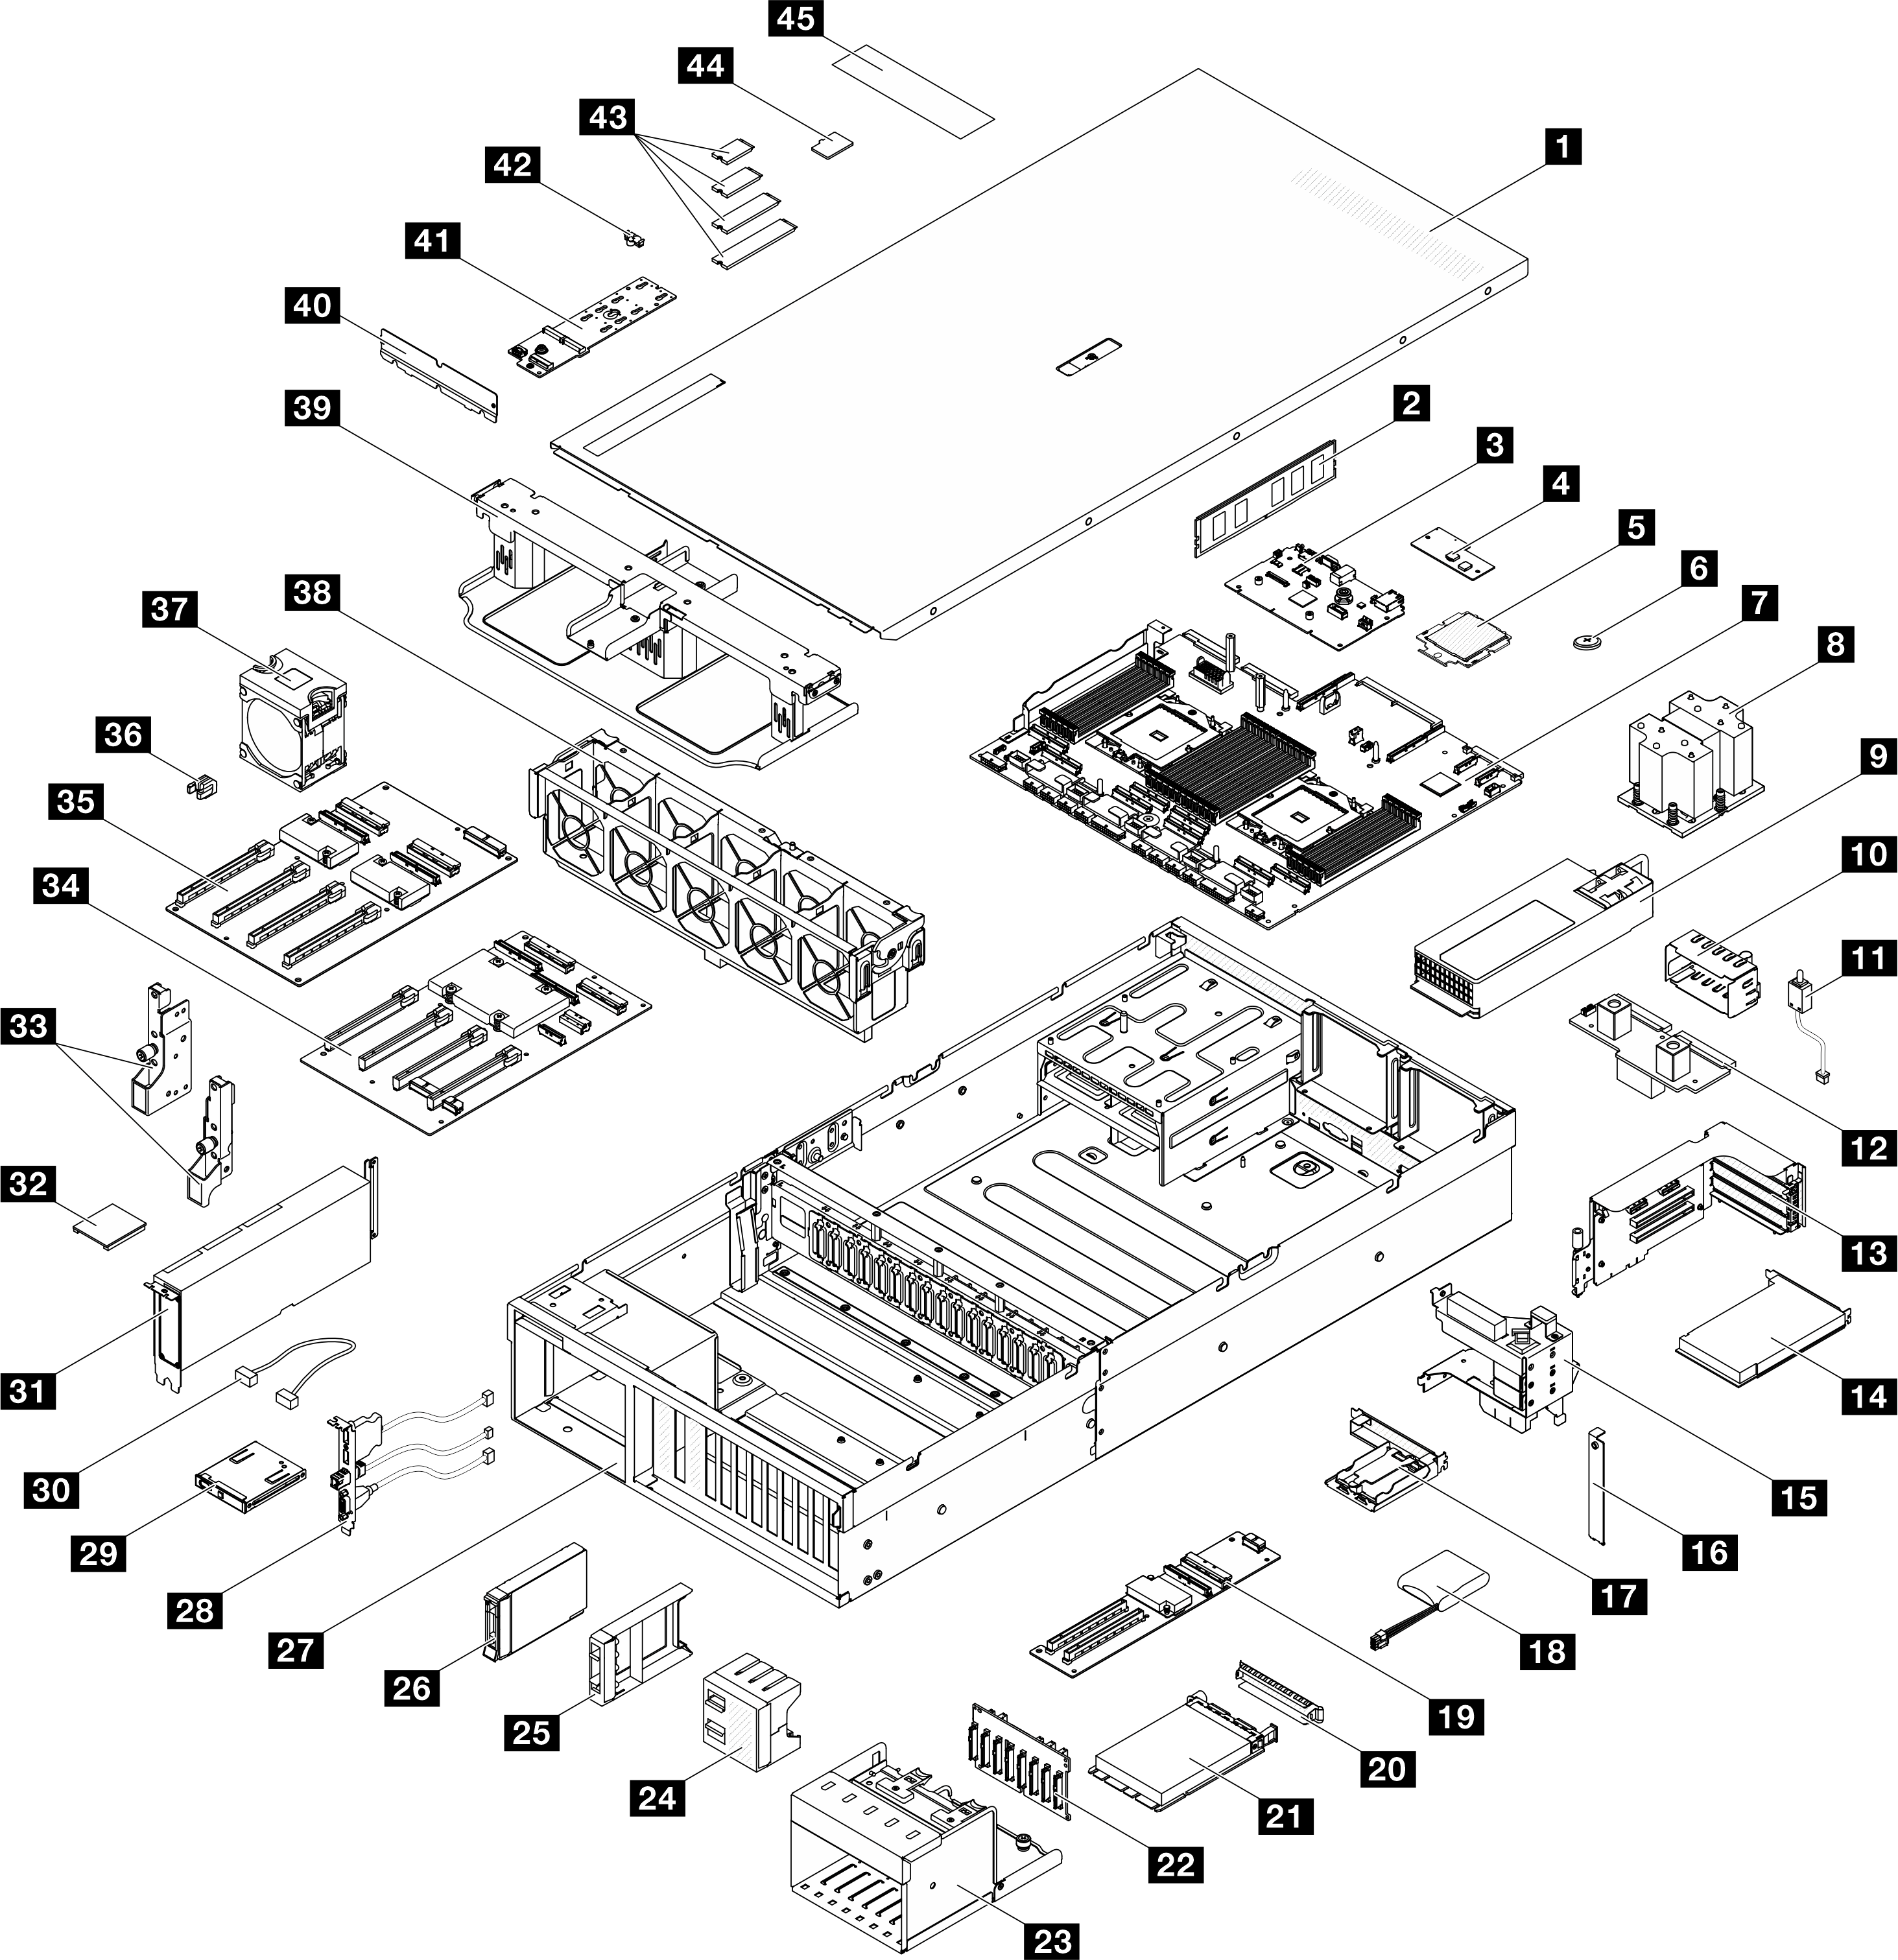 Server components of the Modèle de GPU 4-DW